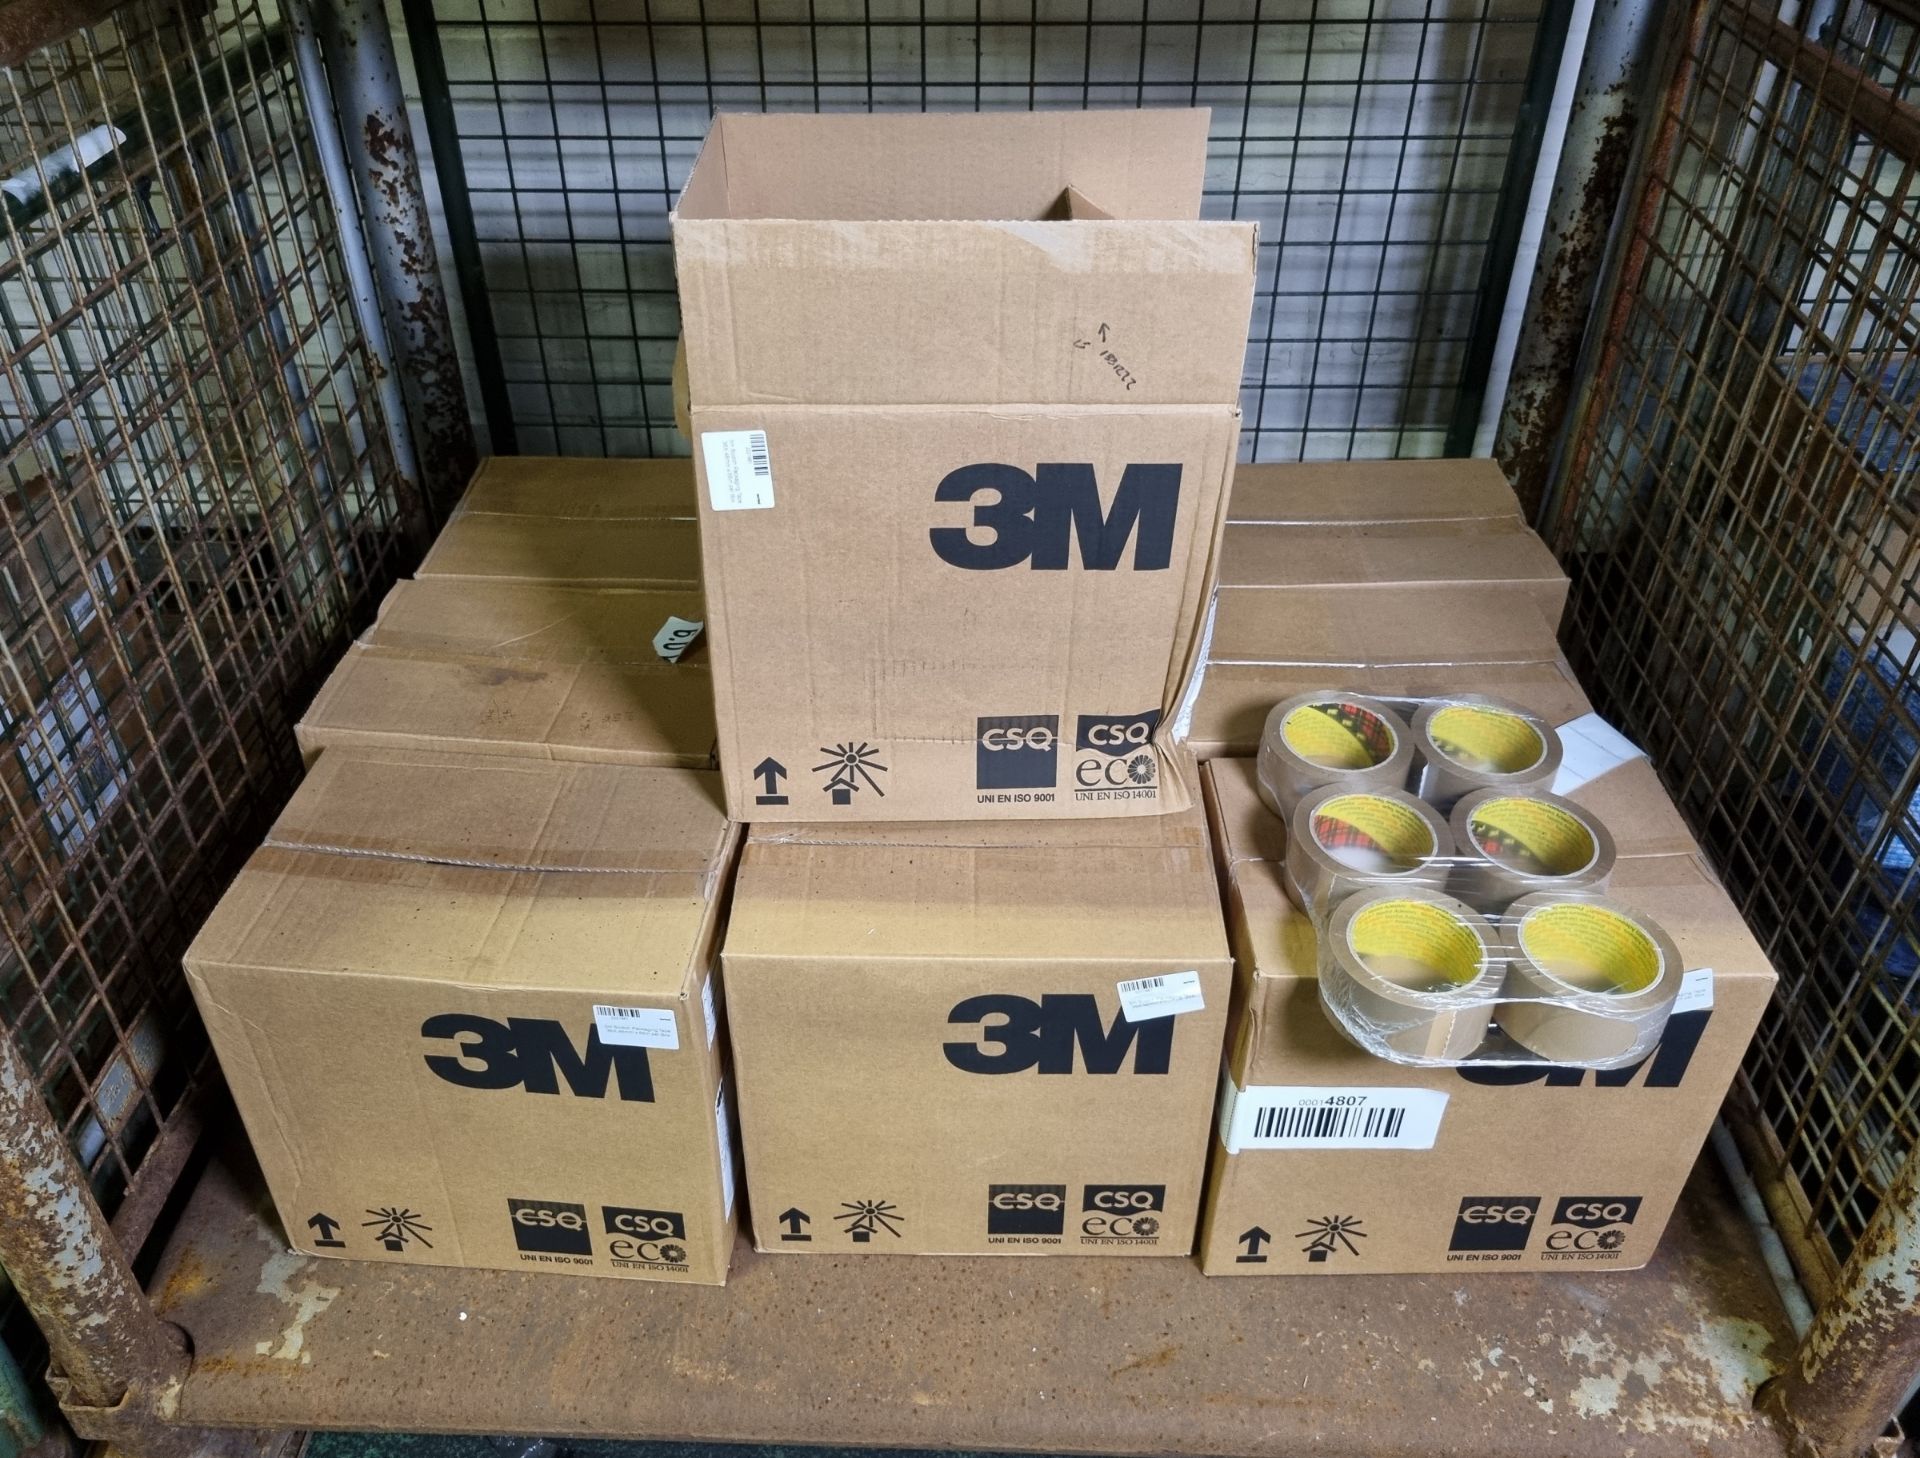 10x boxes of 3m Scotch Packaging Tape 48mm x 66m per Box - 36 per box